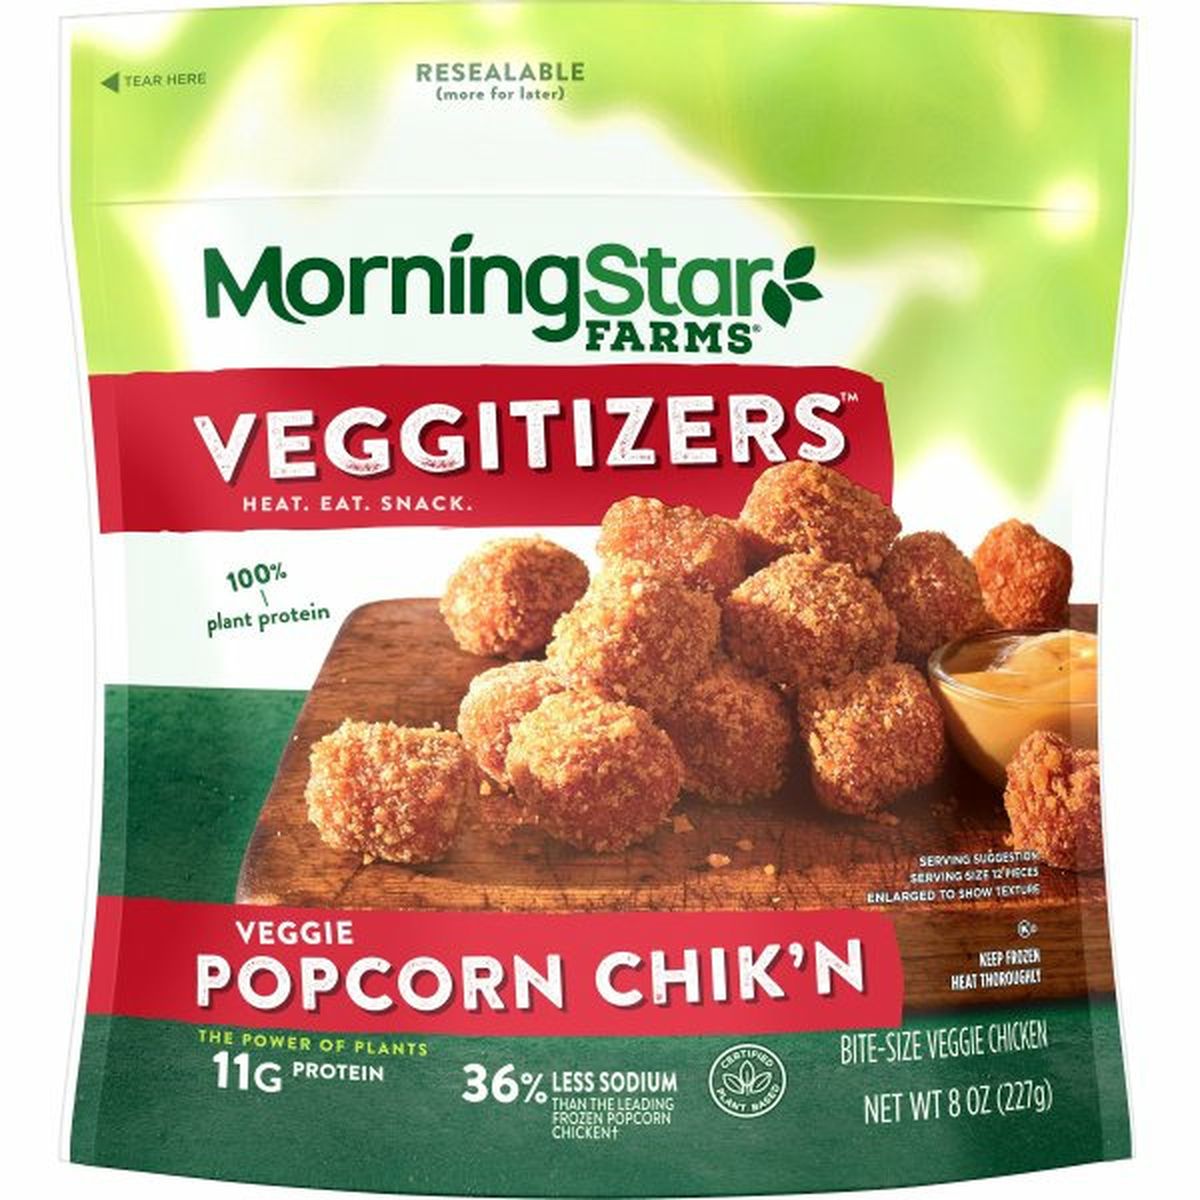 Calories in Morning Star Farms Veggie MorningStar Farms Veggie Popcorn Chik'n, Original, Vegan, 8oz